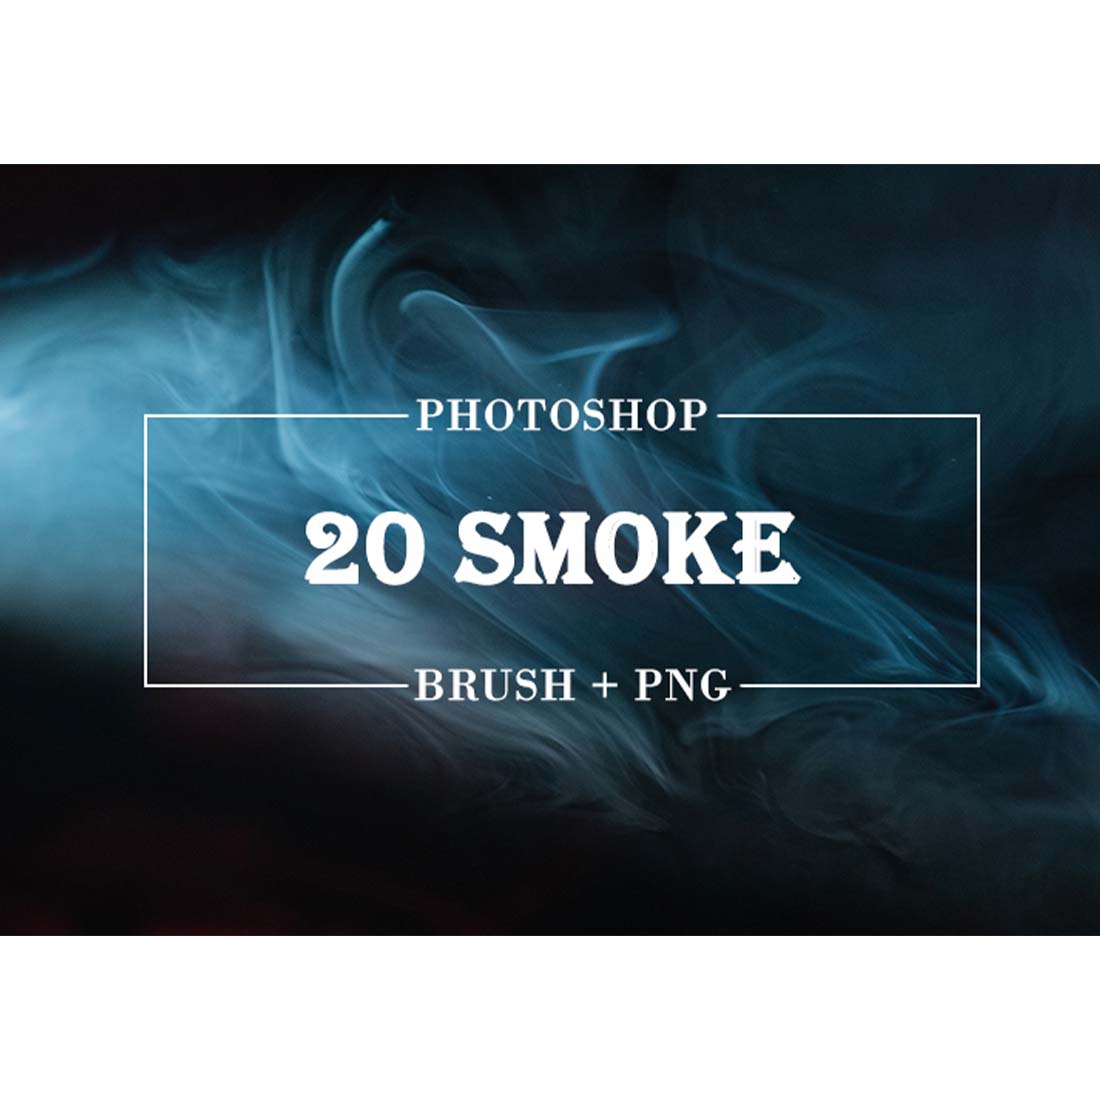 Smoke Photoshop Brushes cover image.